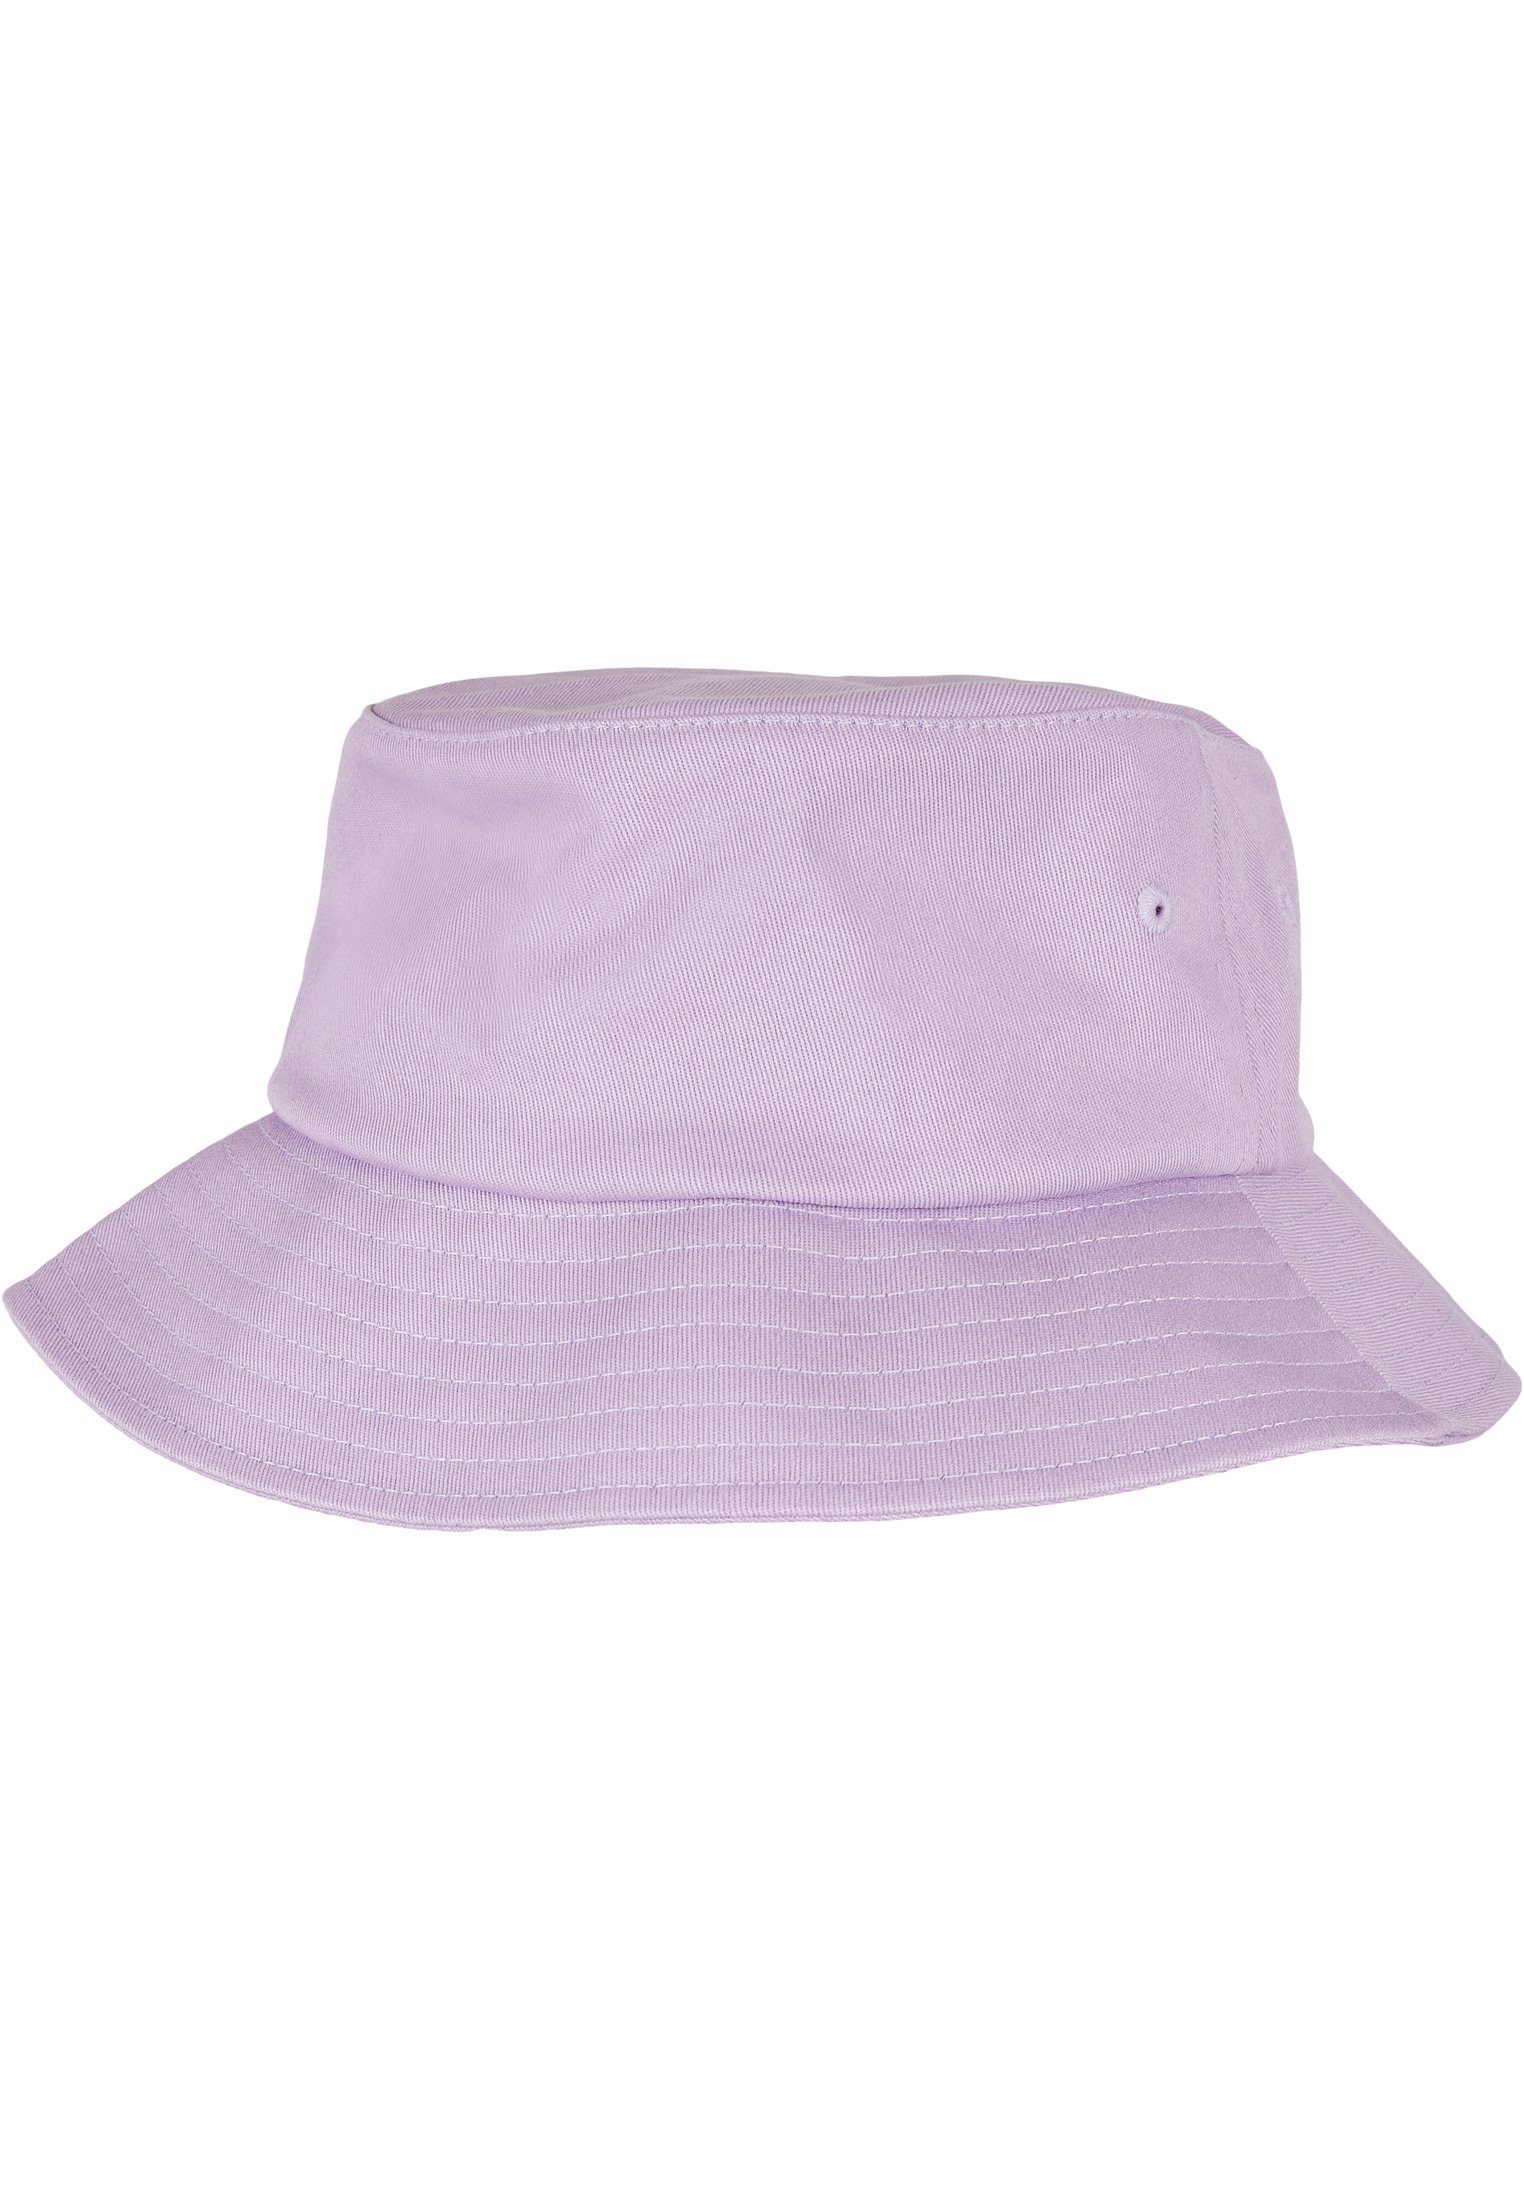 Flexfit Flexfit Accessoires Twill Cotton lilac Hat Flex Cap Bucket